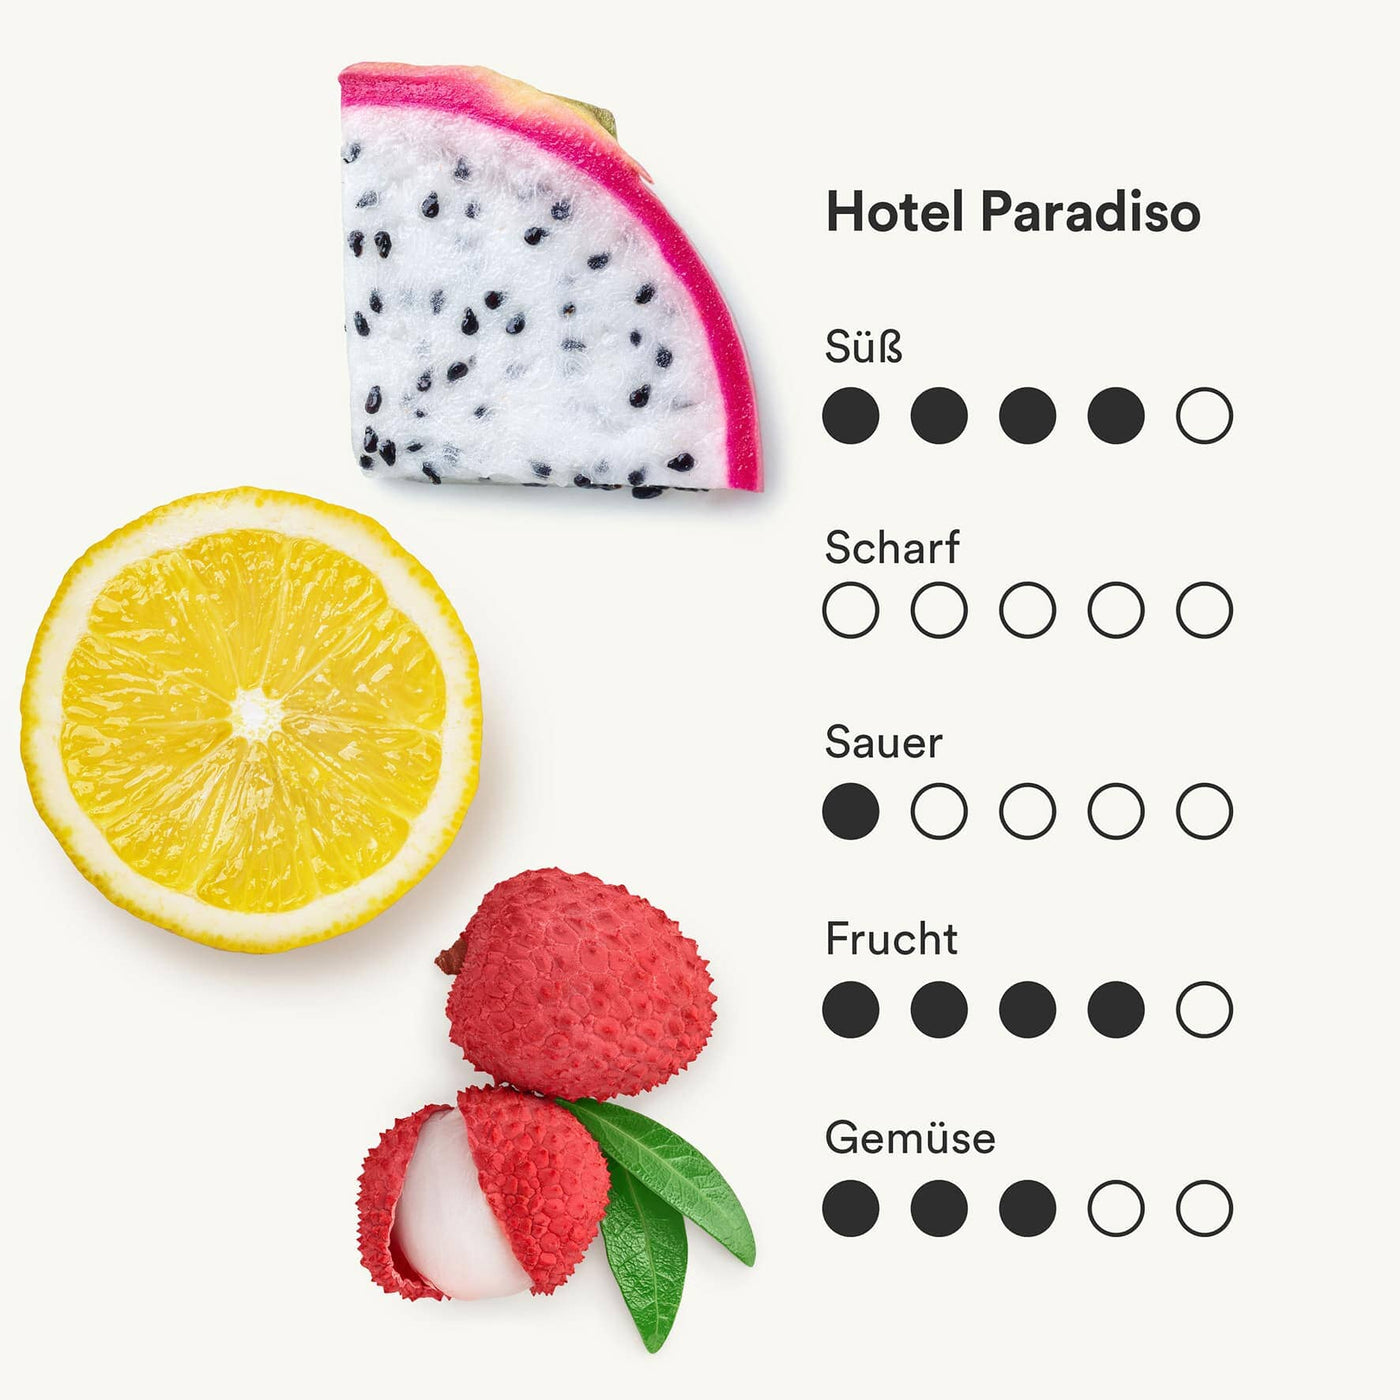 Darstellung des Saft Hotel Paradiso mit Litschi, Drachenfrucht, Yuzu und Zitrone von frank.